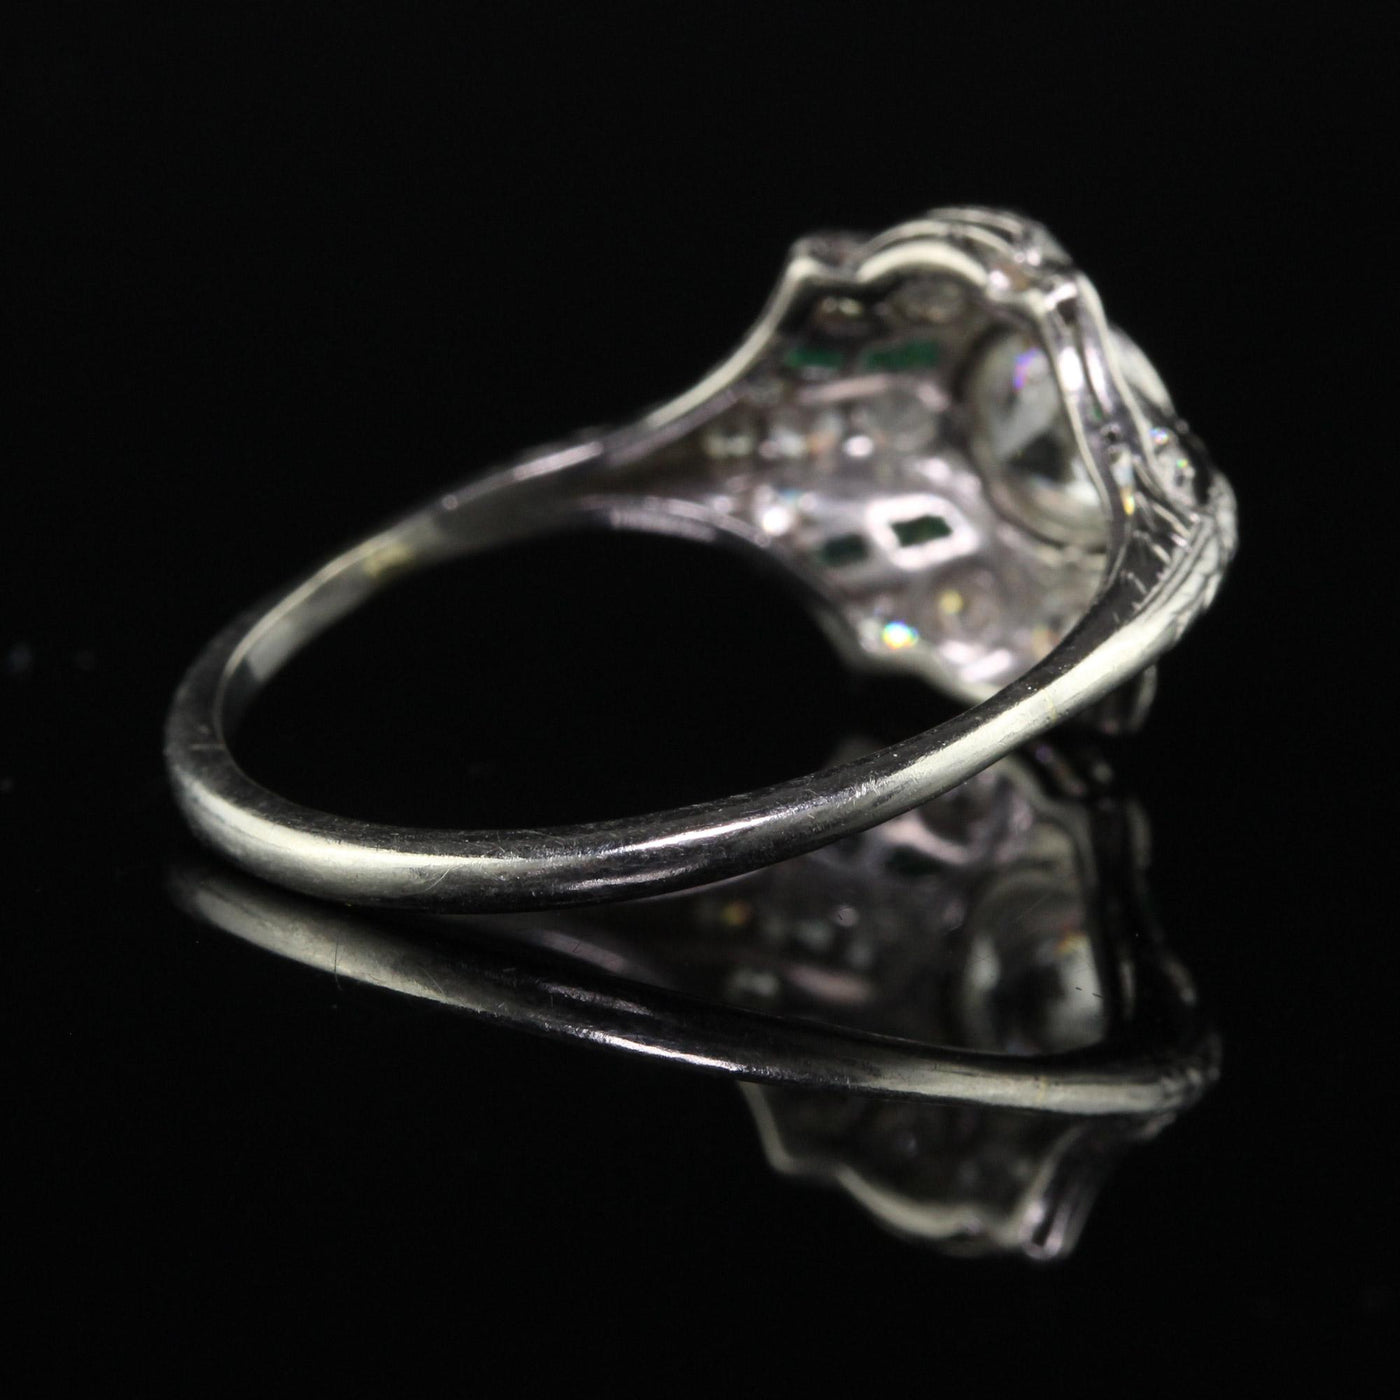 Antique Art Deco Platinum Old European Diamond and Emerald Engagement Ring